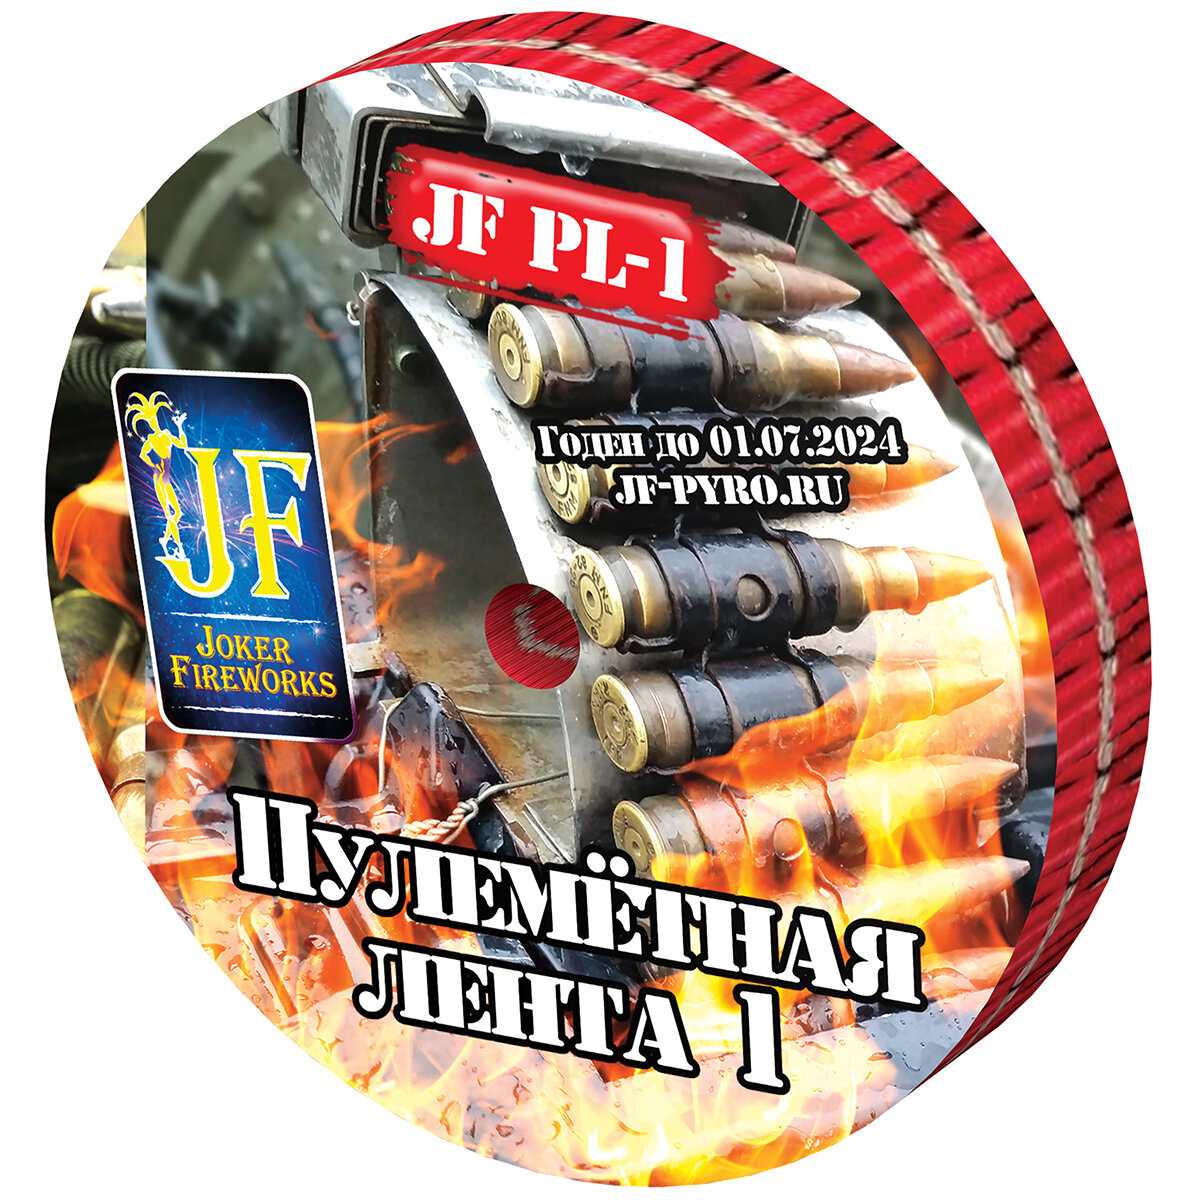 Петарды Joker Fireworks Пулемётная лента 1 JF PL-1